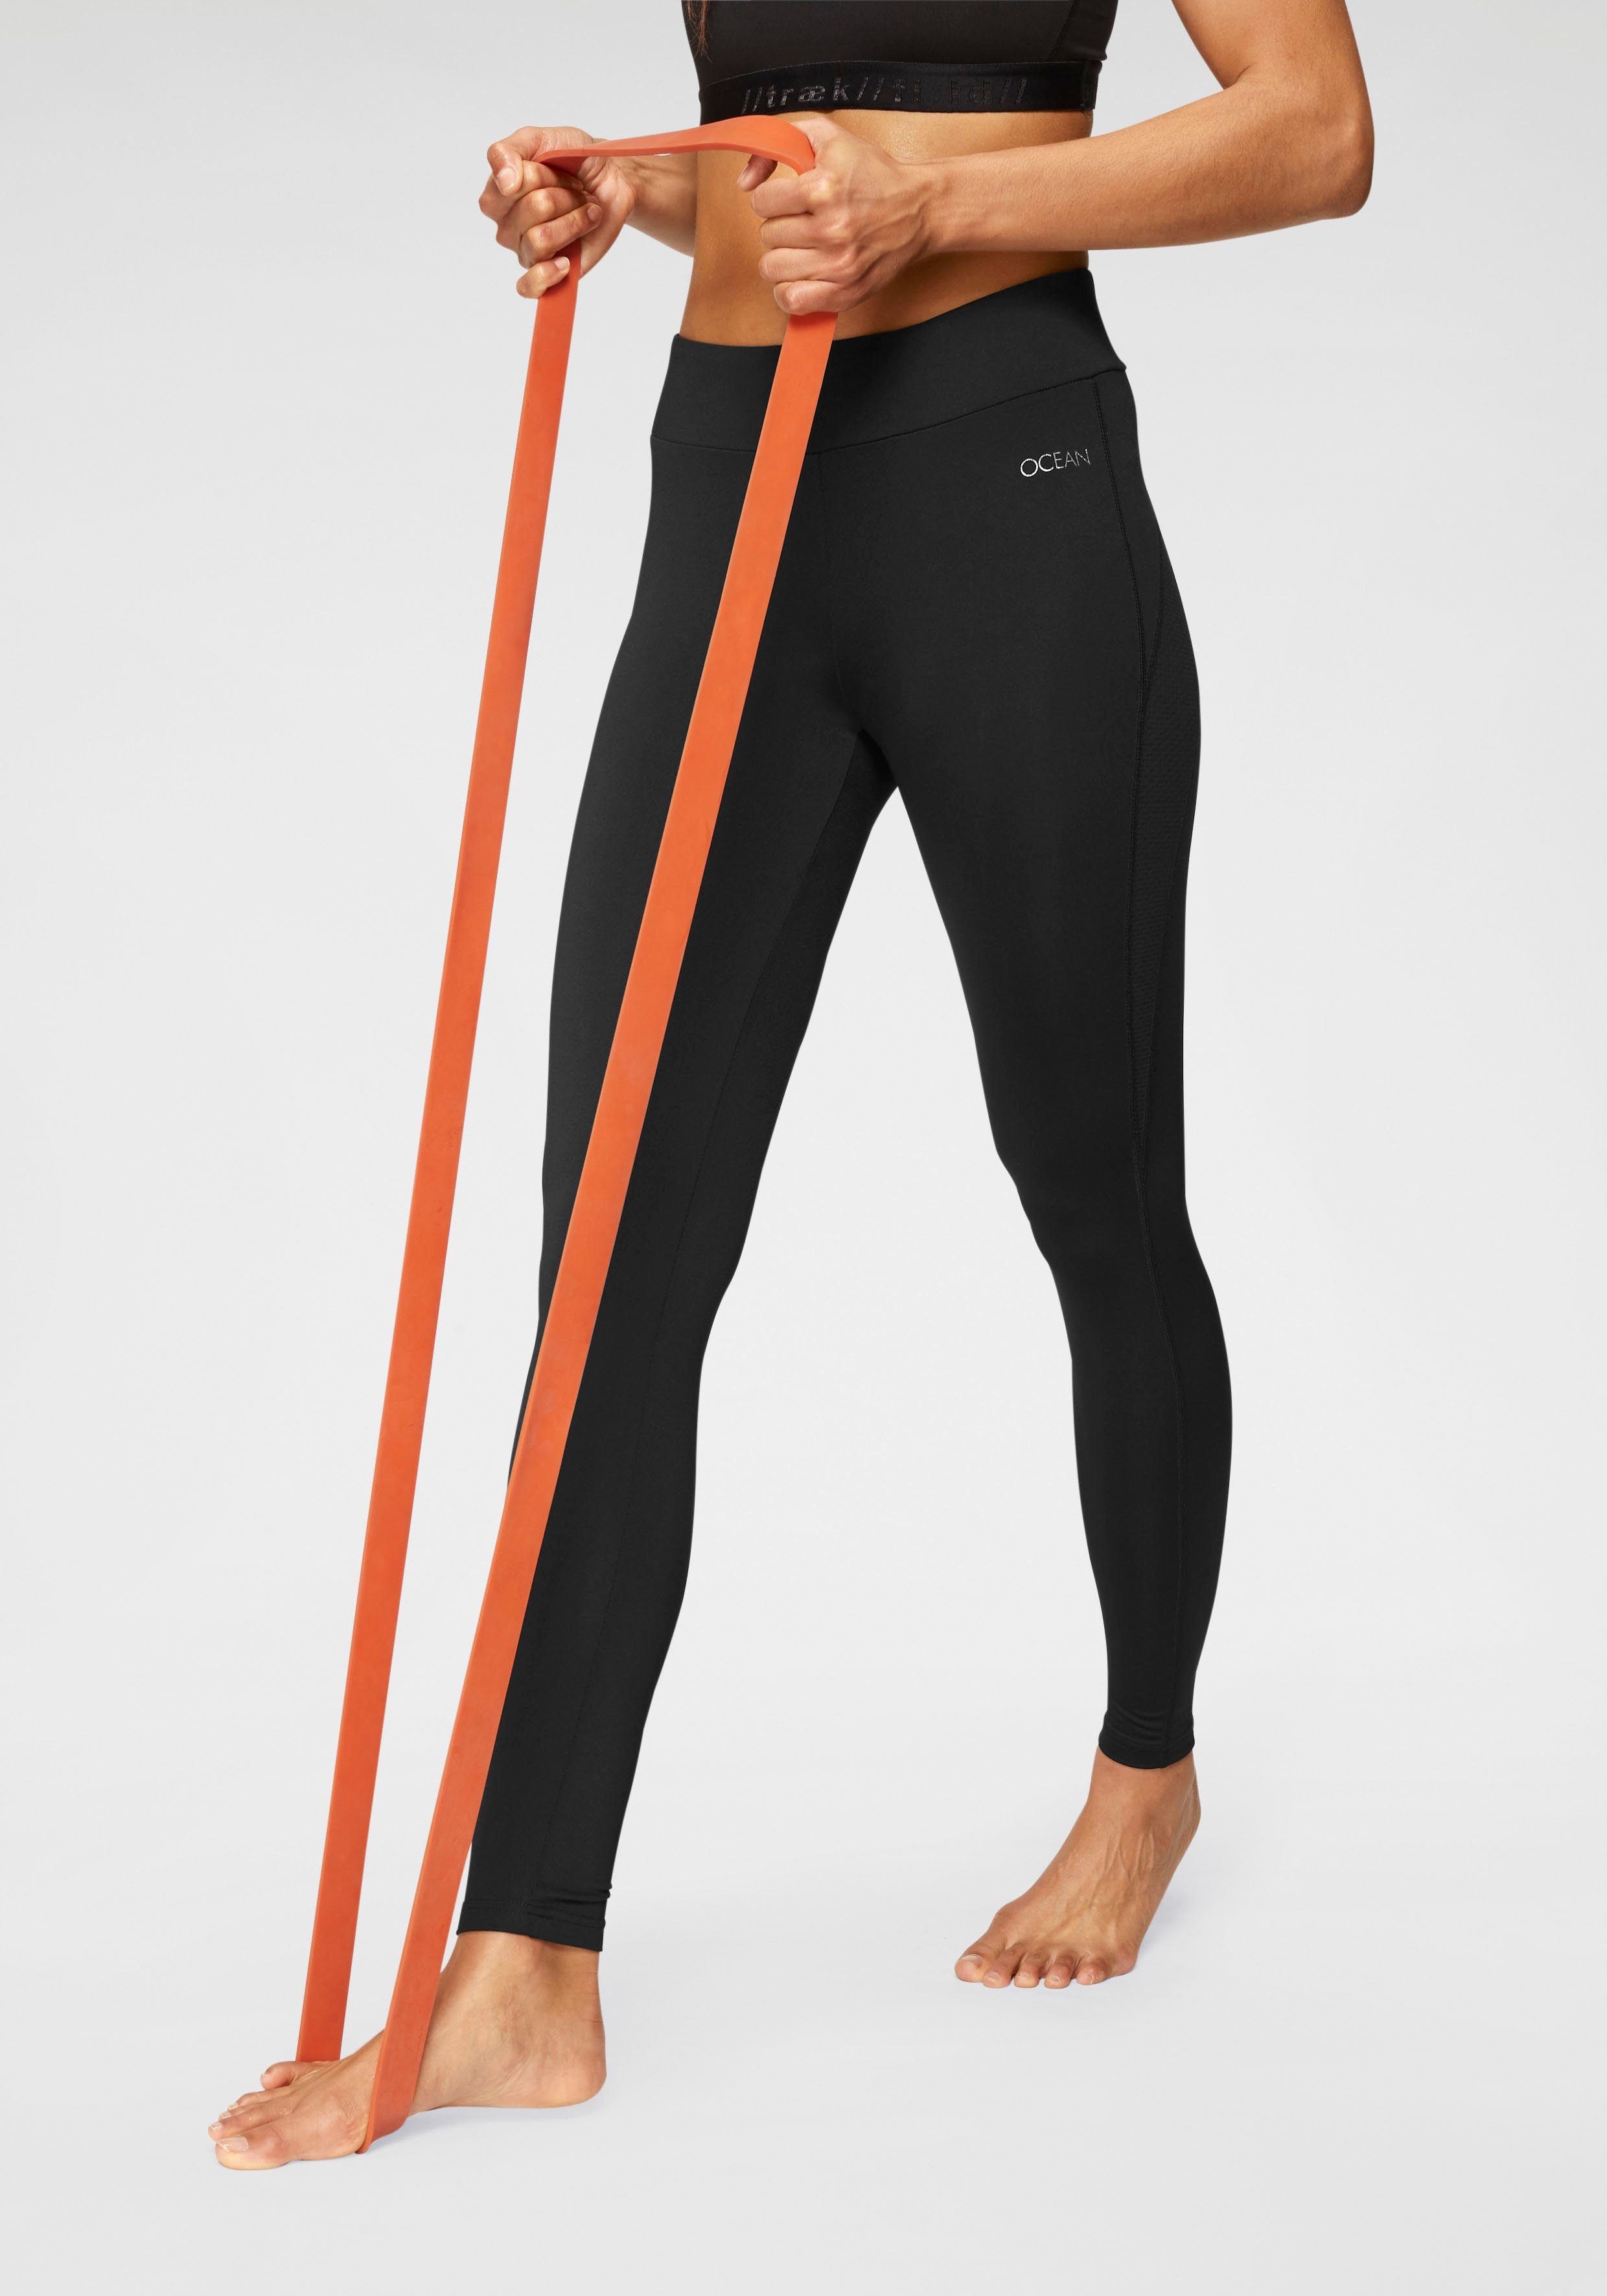 Ocean Sportswear Leggings Yoga-Tights mit Mesh-Einsätze | Hosen